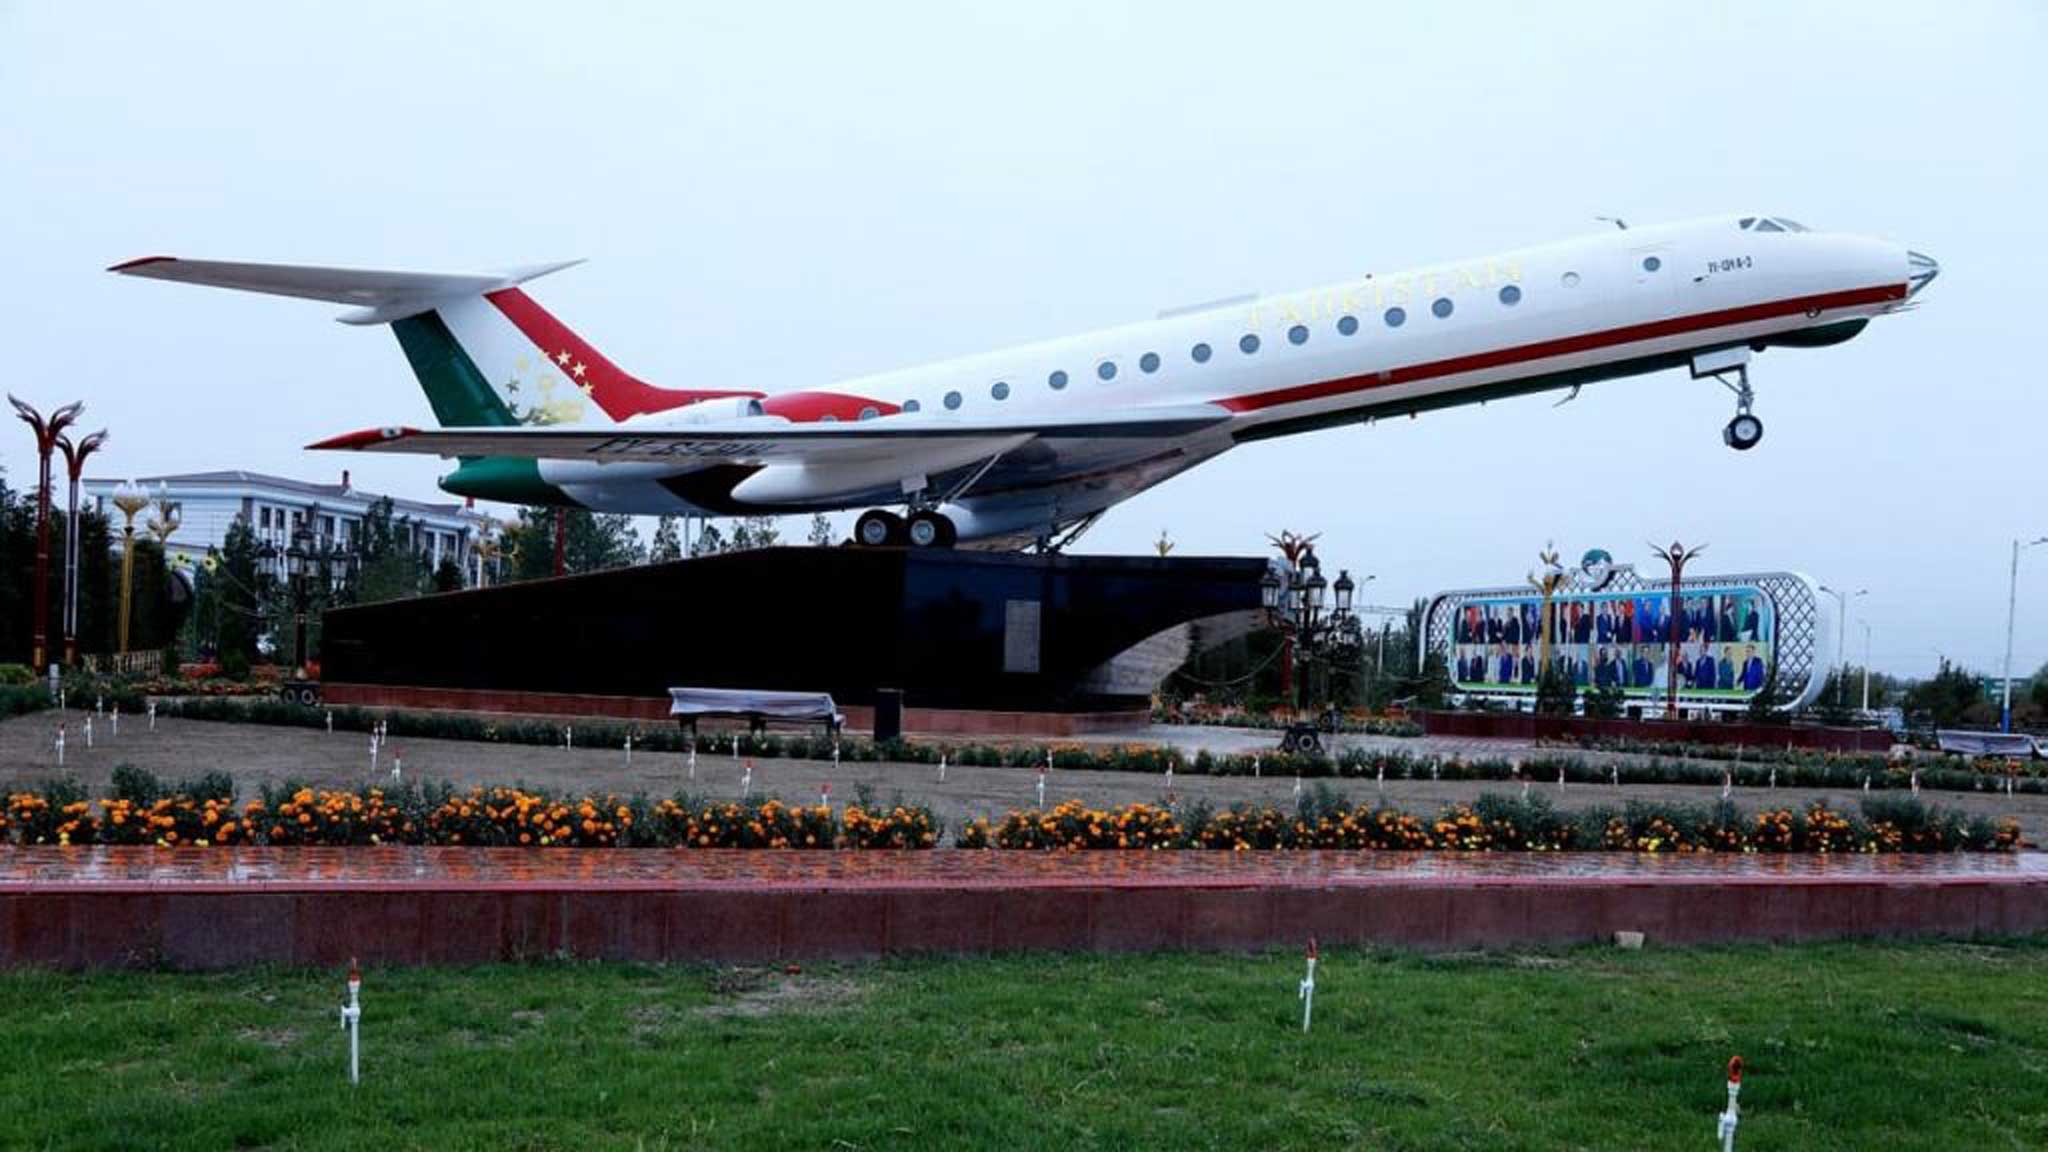 Аэропорт худжанд: обзор международного аэропорта таджикистана, используемые самолеты, направления перелетов, фото